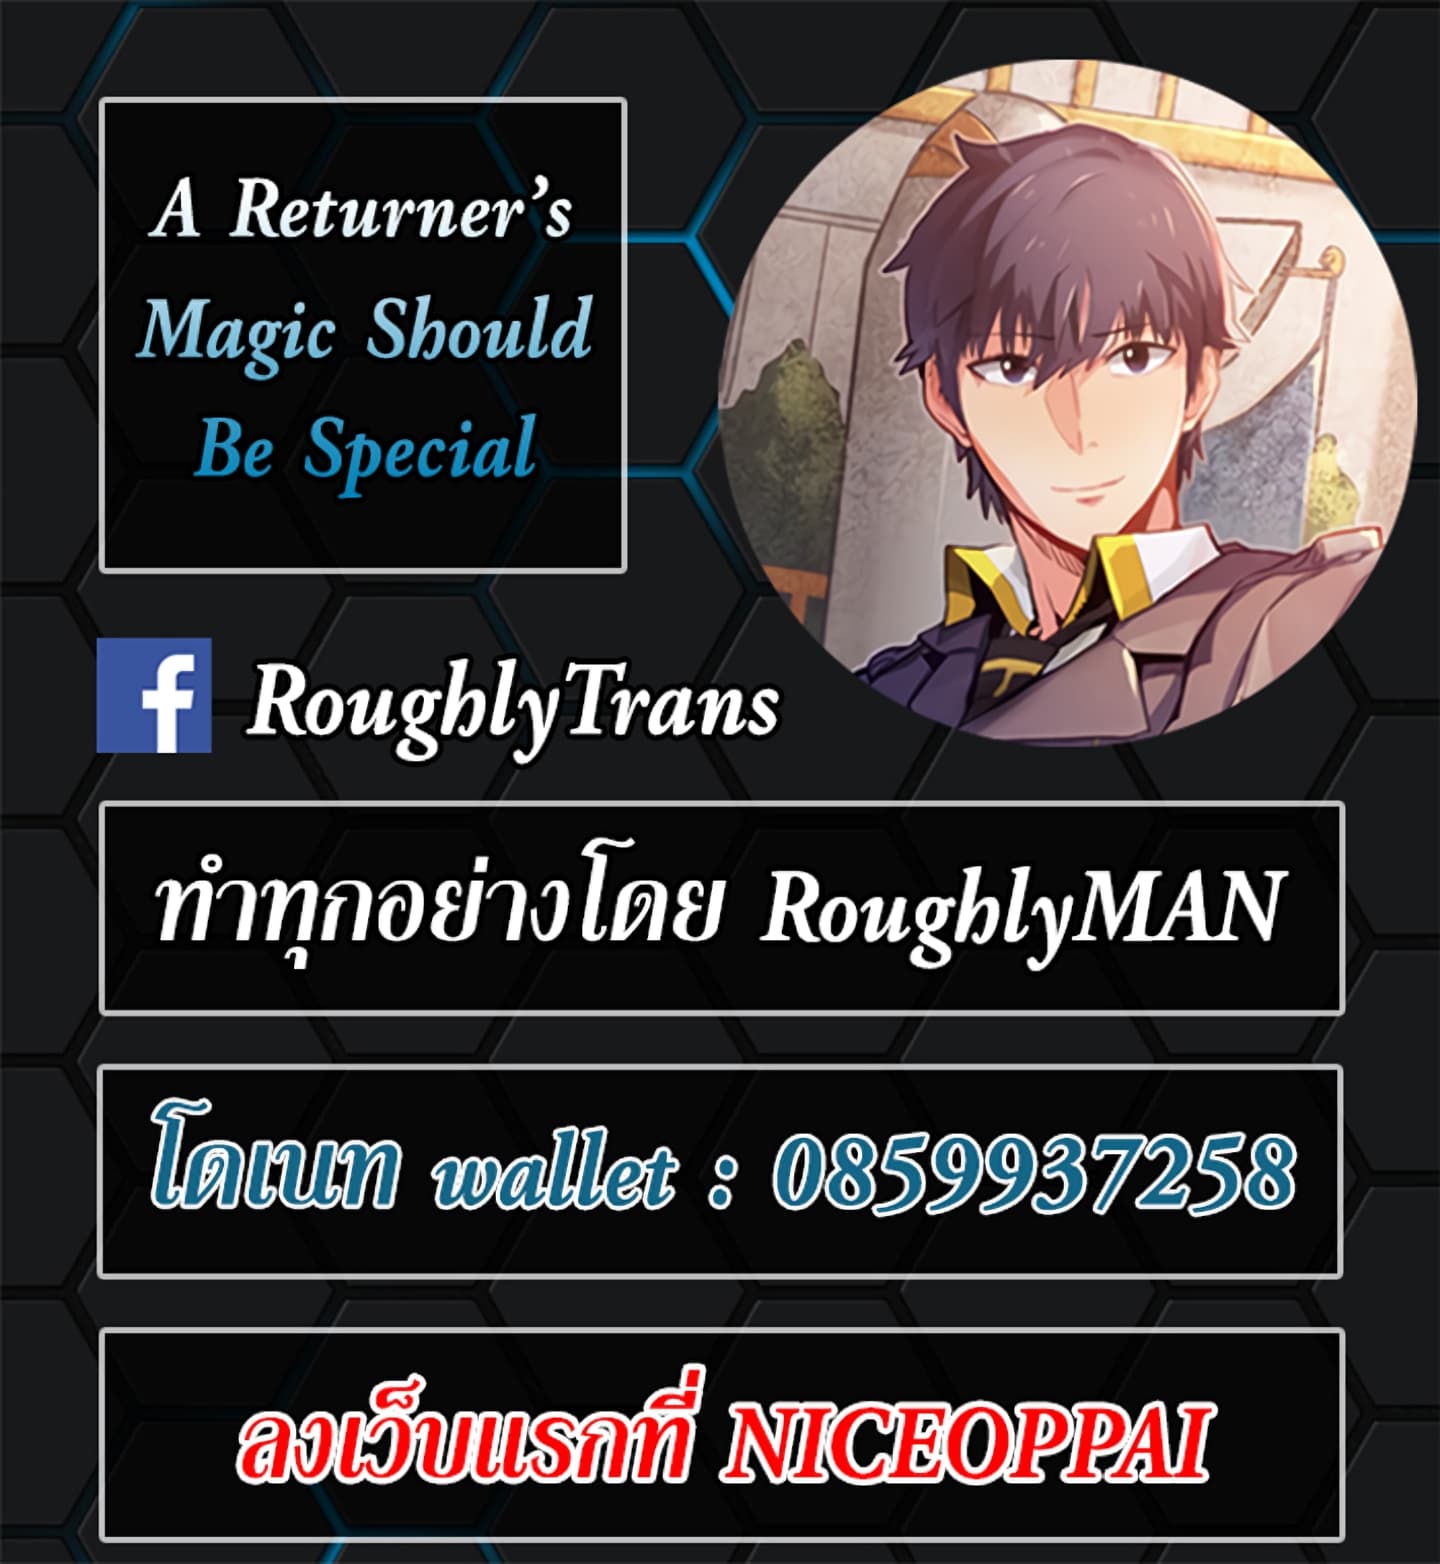 A Returner’s Magic Should Be Special58 12